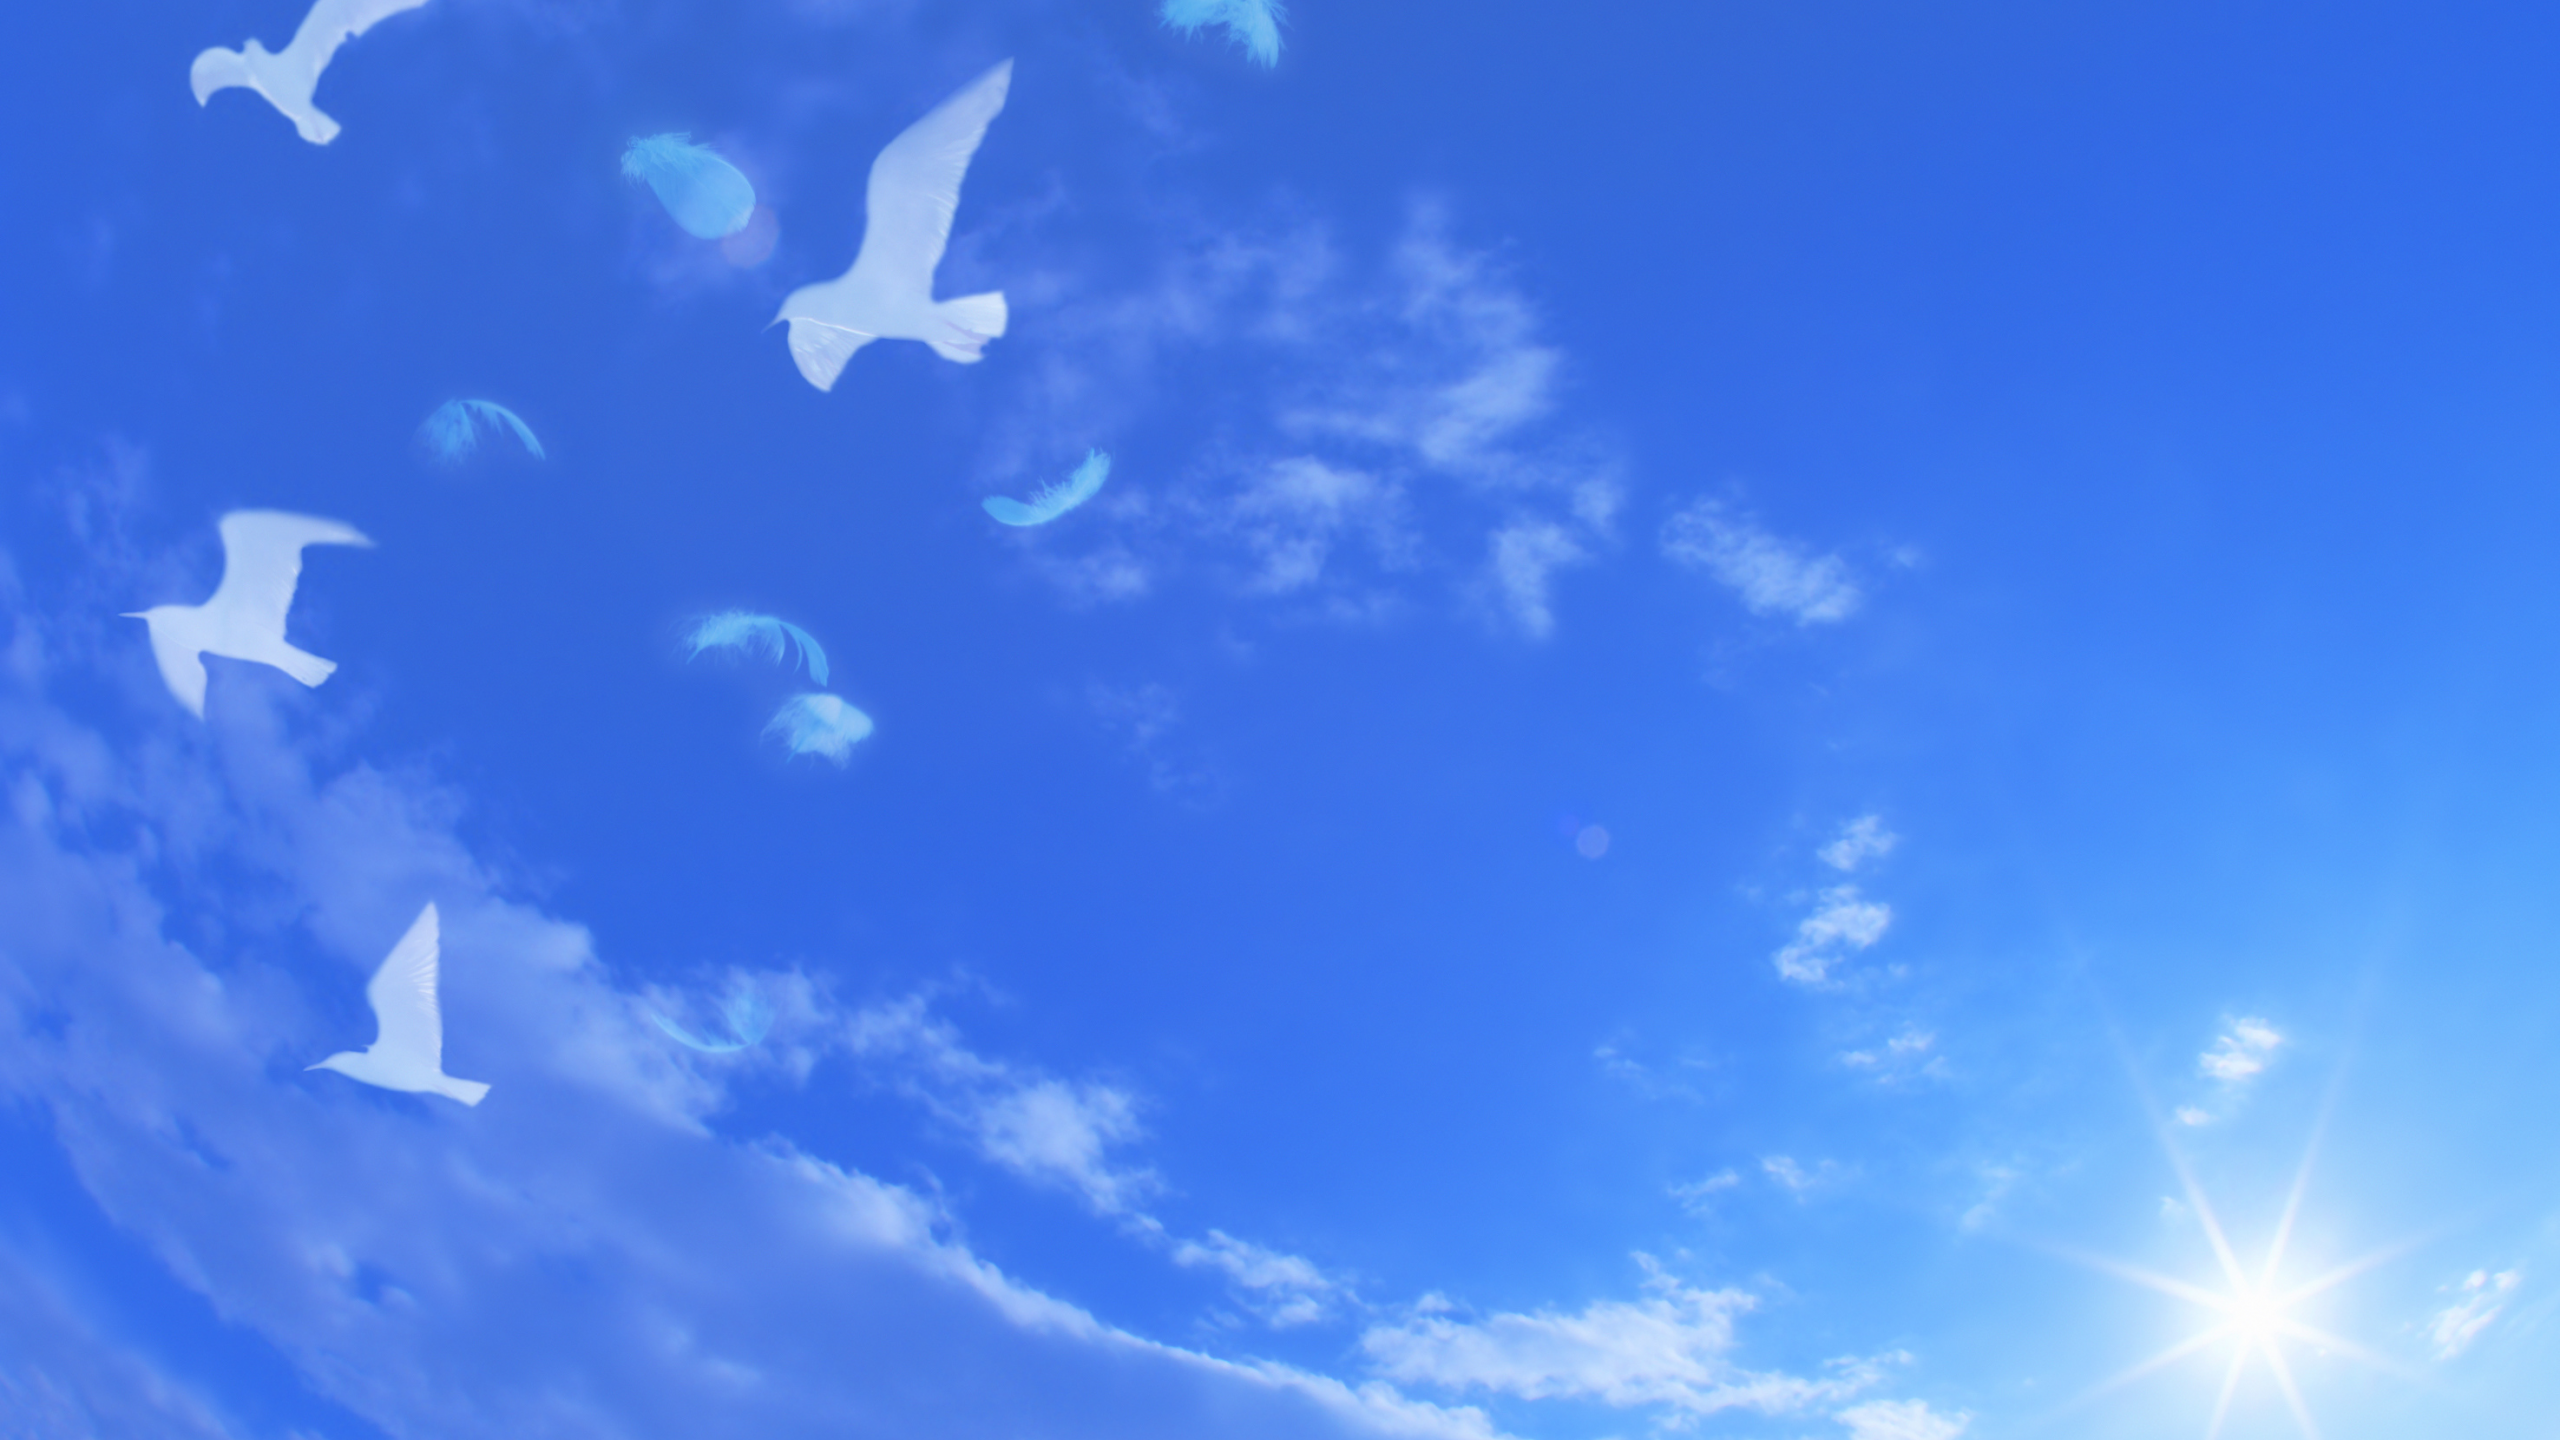 Фон небо с голубями